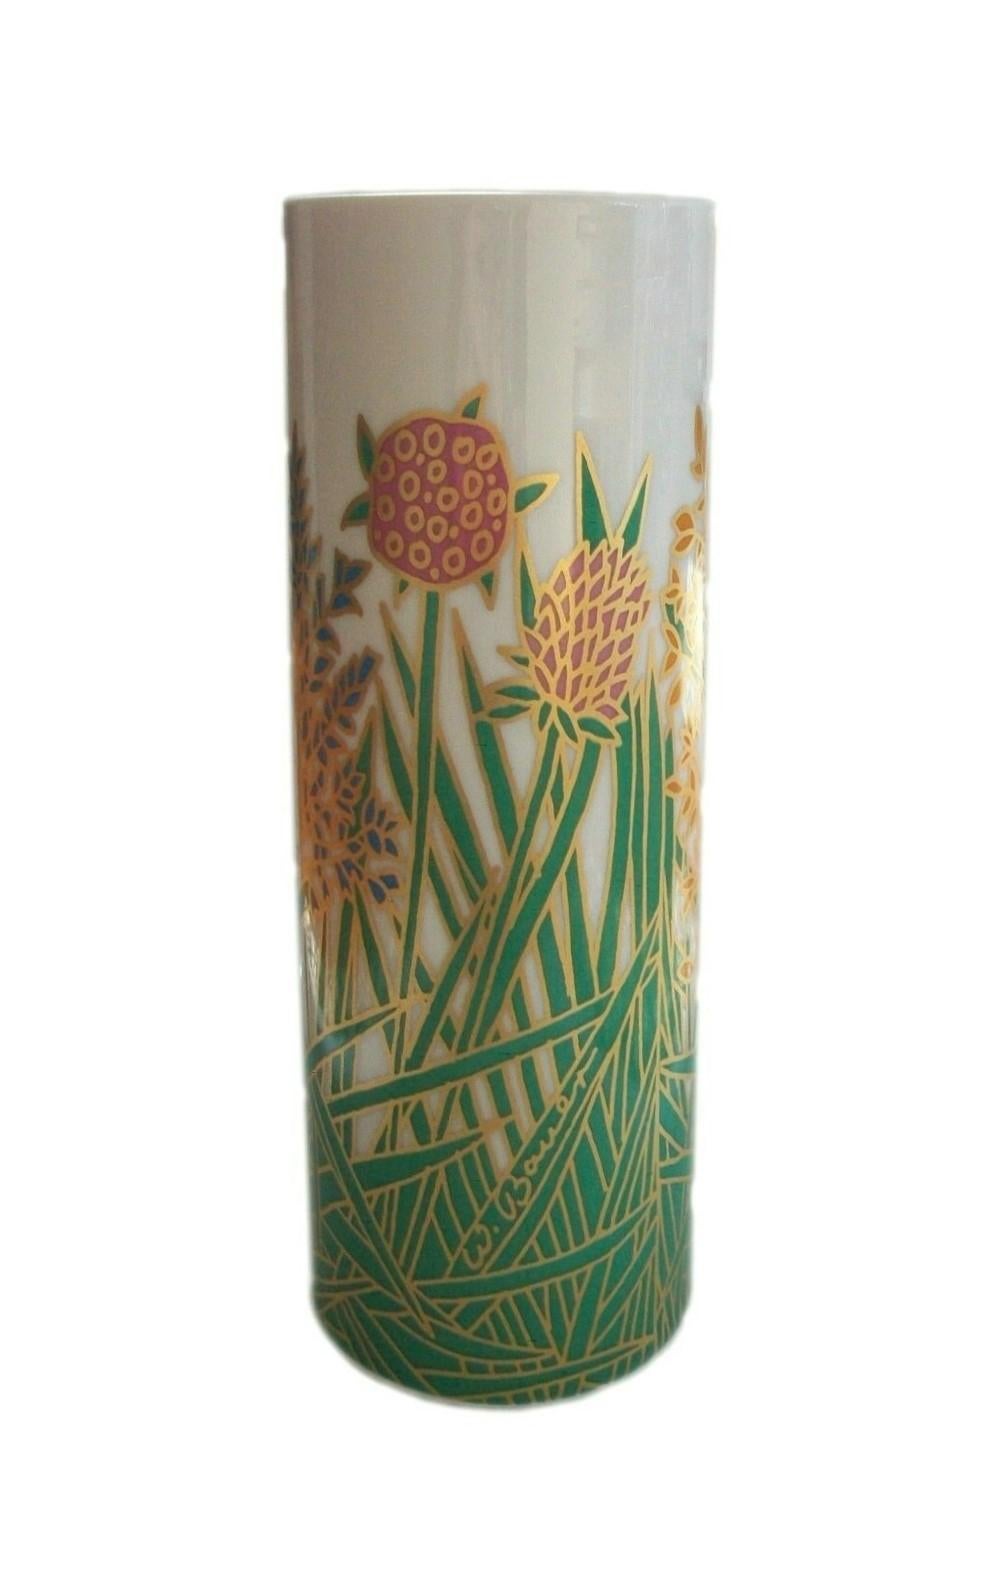 ROSENTHAL  Studio Line  Wolf Bauer (Designer) - Vase mi-siècle doré et décoré de fleurs - signé dans le dessin - tampon Rosenthal à la base - Allemagne - circa 1970's.

Excellent/neuf état vintage - pas de perte - pas de dommage - pas de